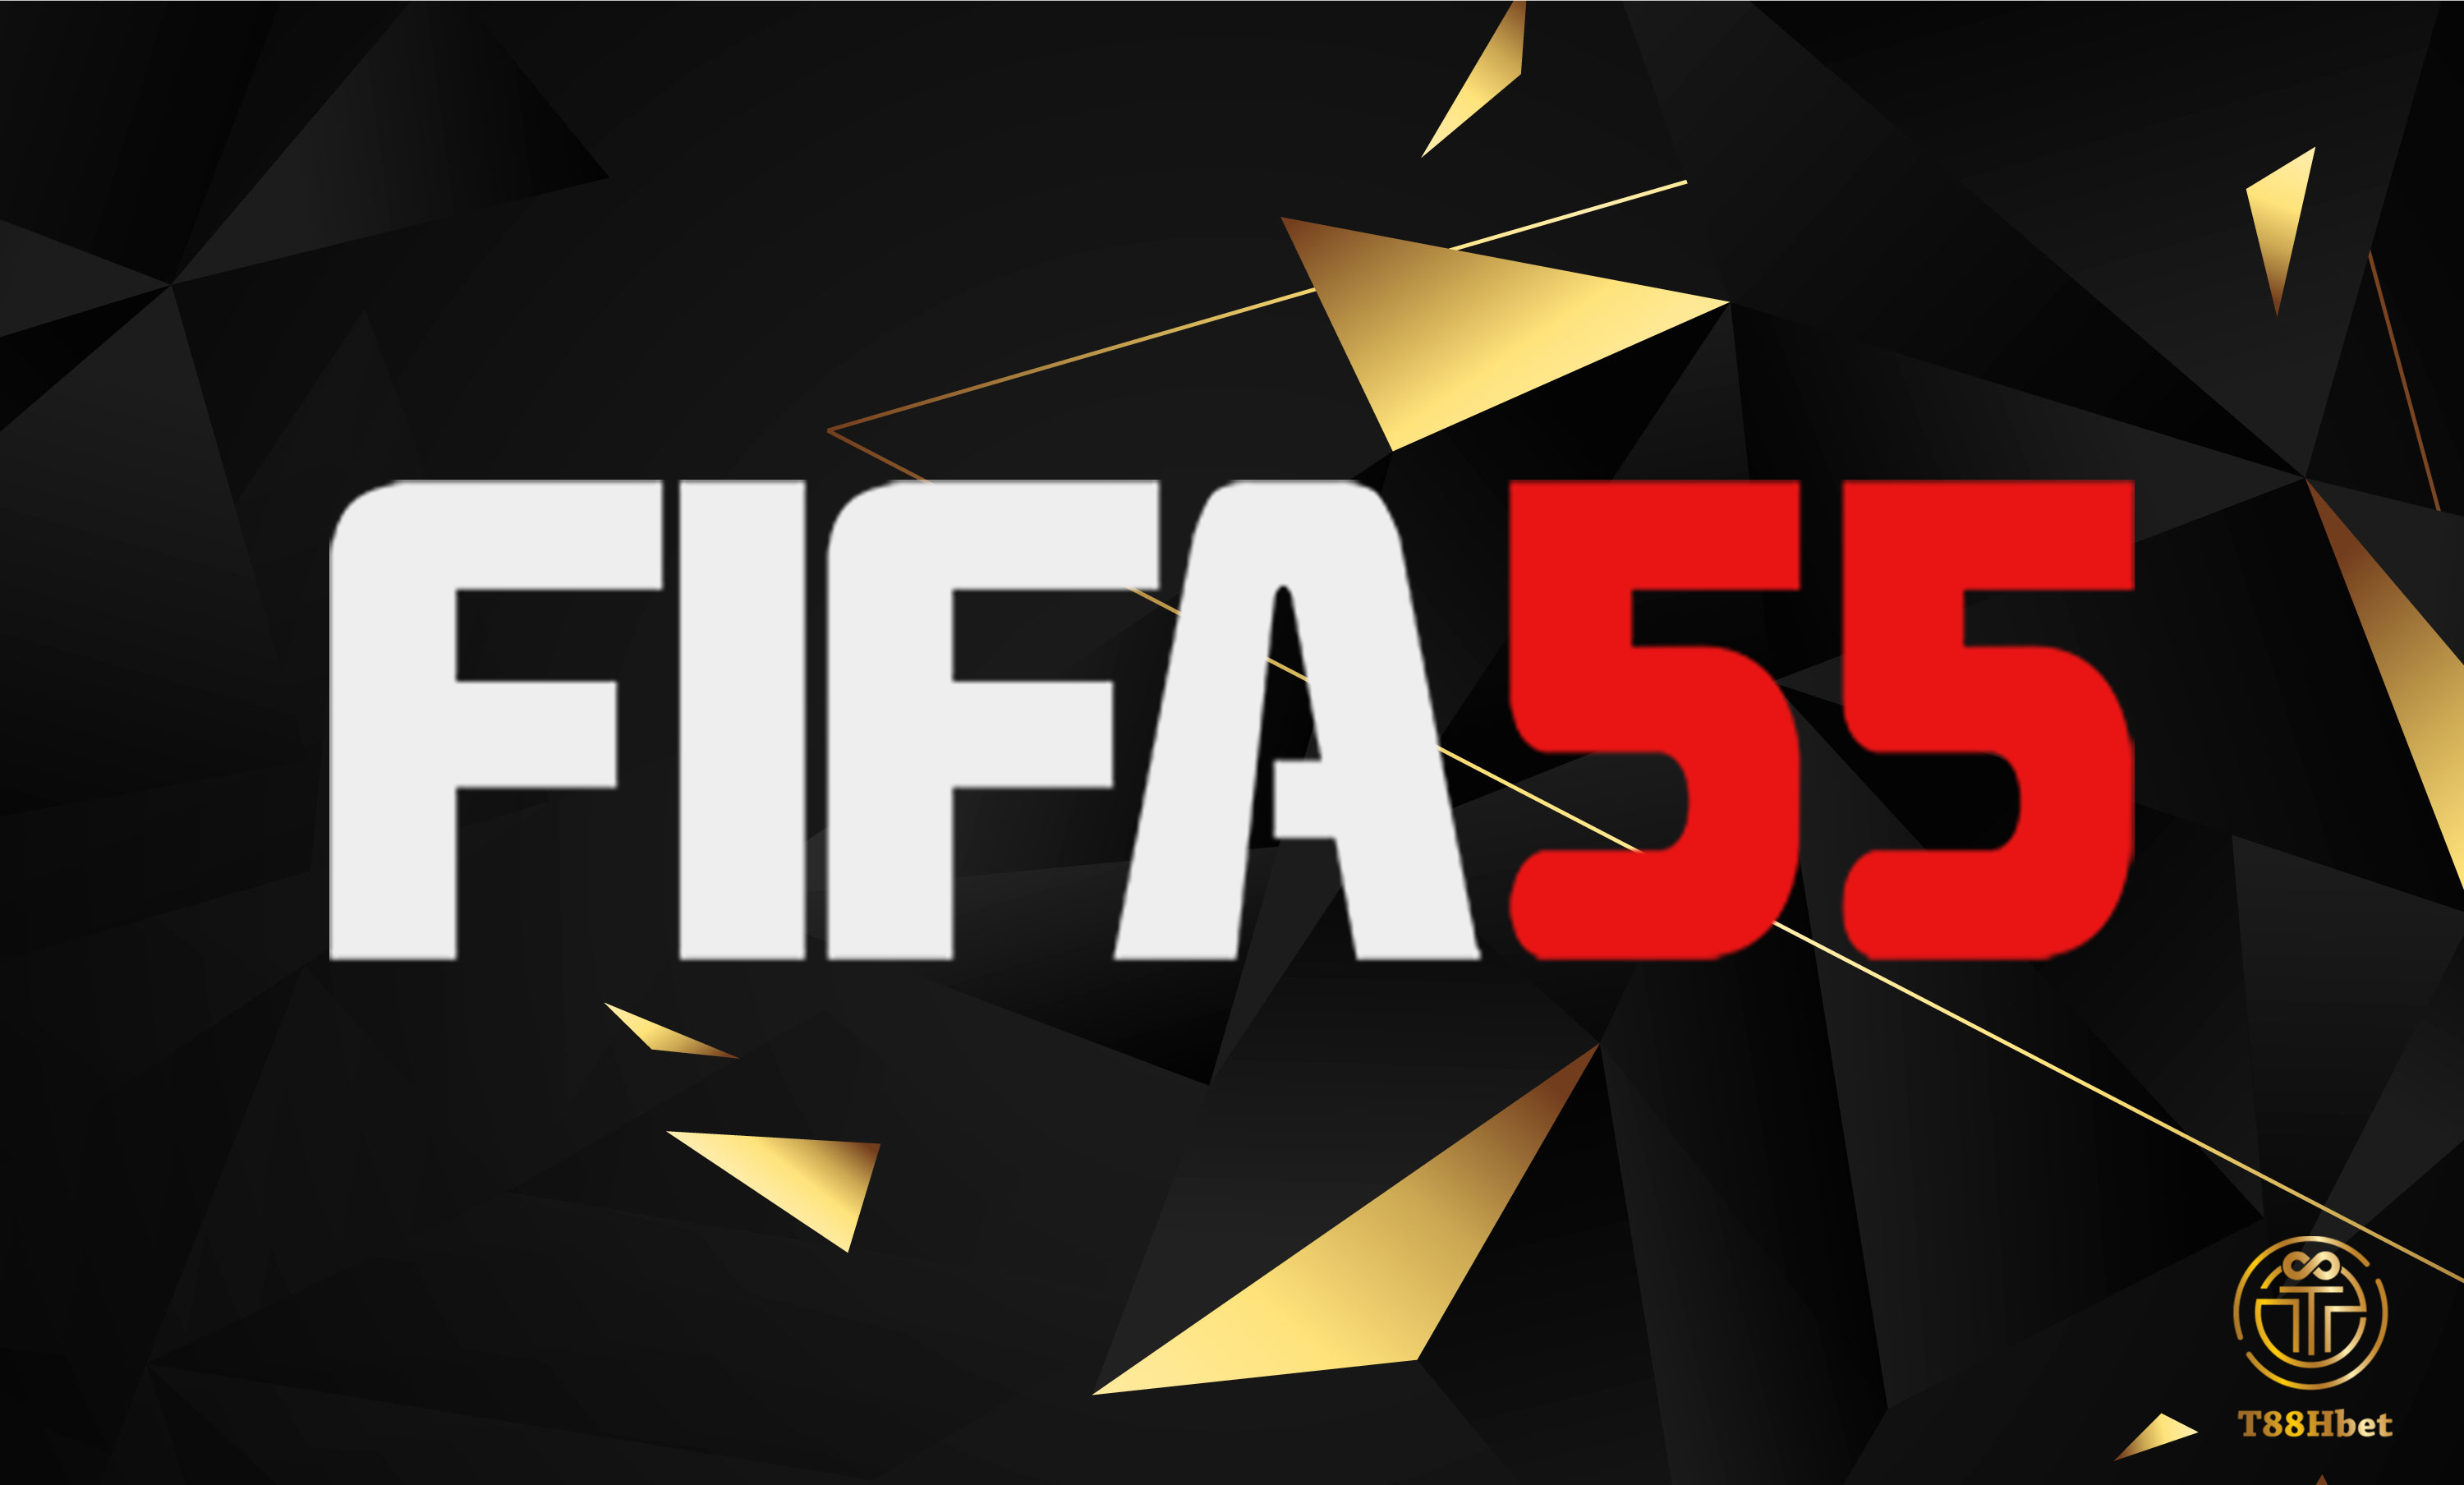 FIFA55 เว็บไซต์อันดับหนึ่งเว็บไซต์อย่างเป็นทางการสำหรับการรับรอง